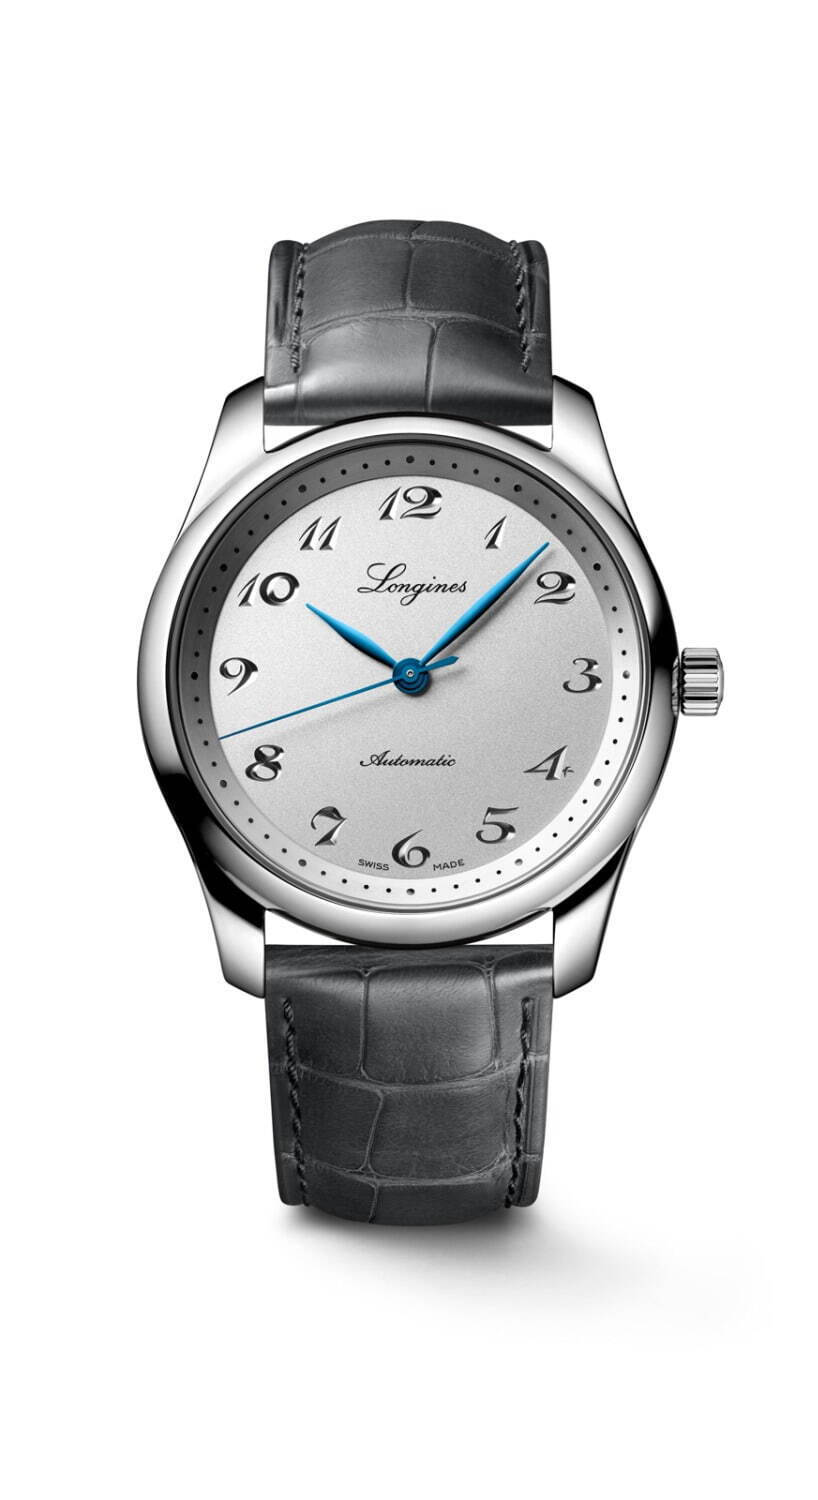 ロンジン“懐中時計”着想の190周年記念腕時計、鮮やかブルー針の